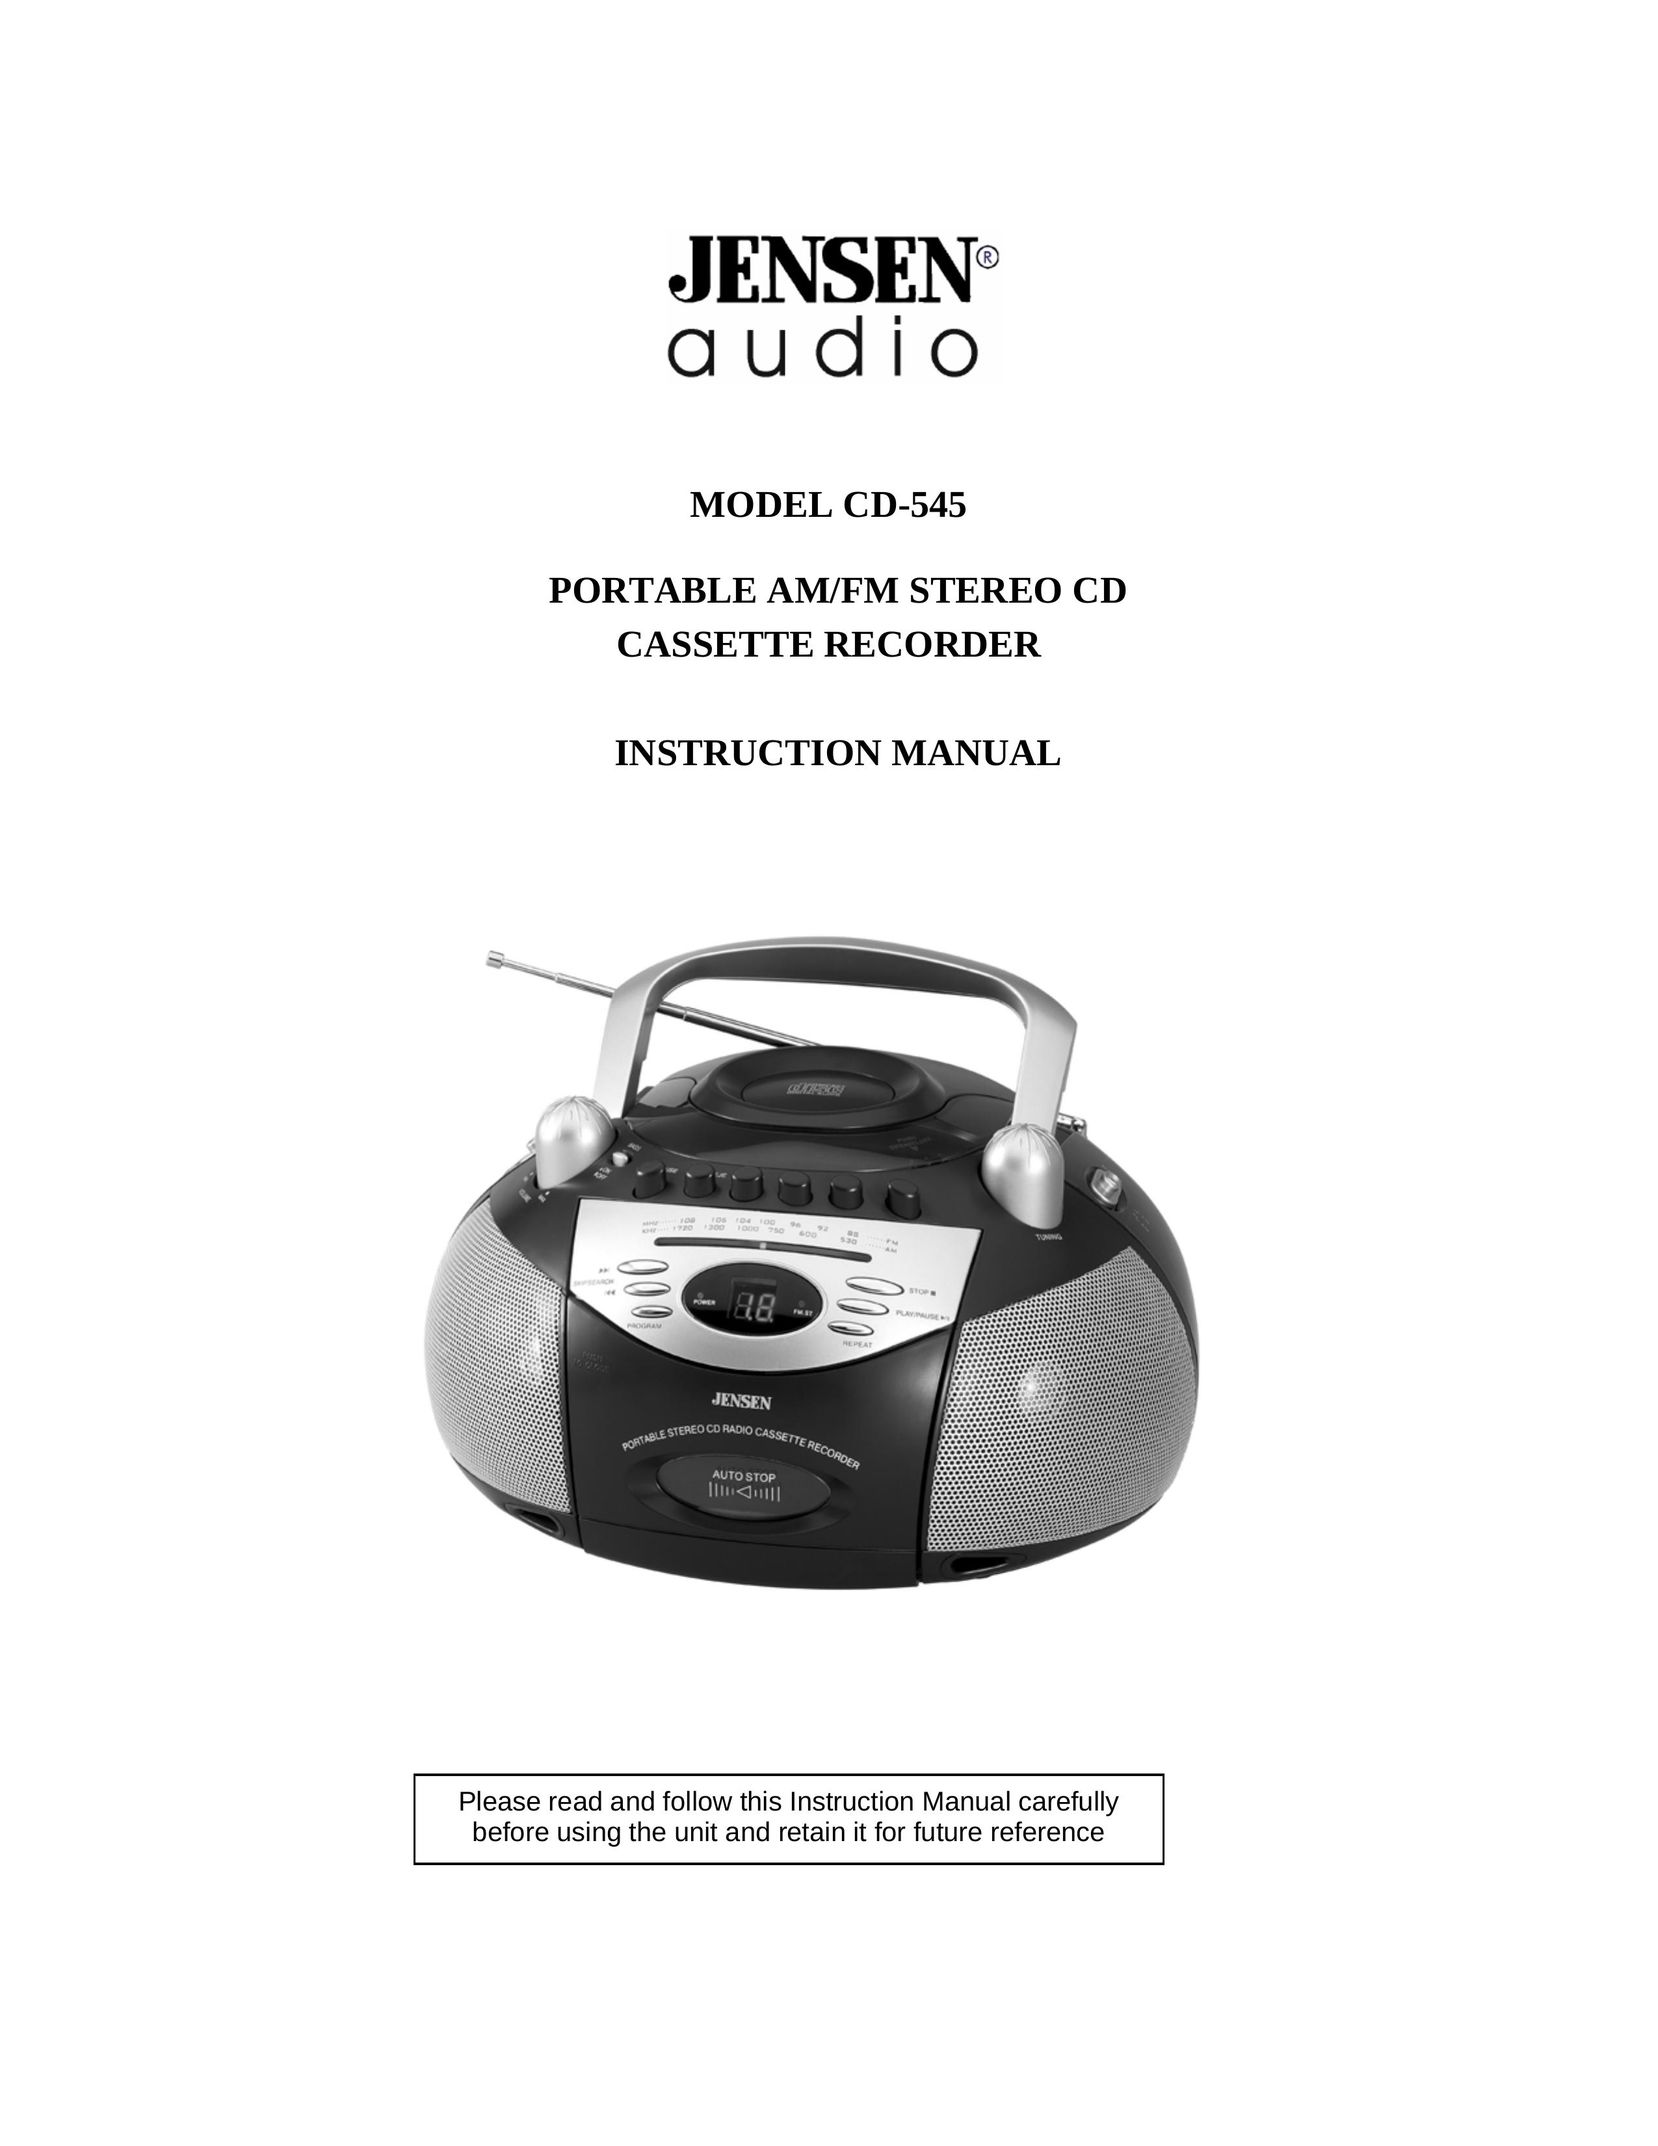 Jensen CD-545 Cassette Player User Manual